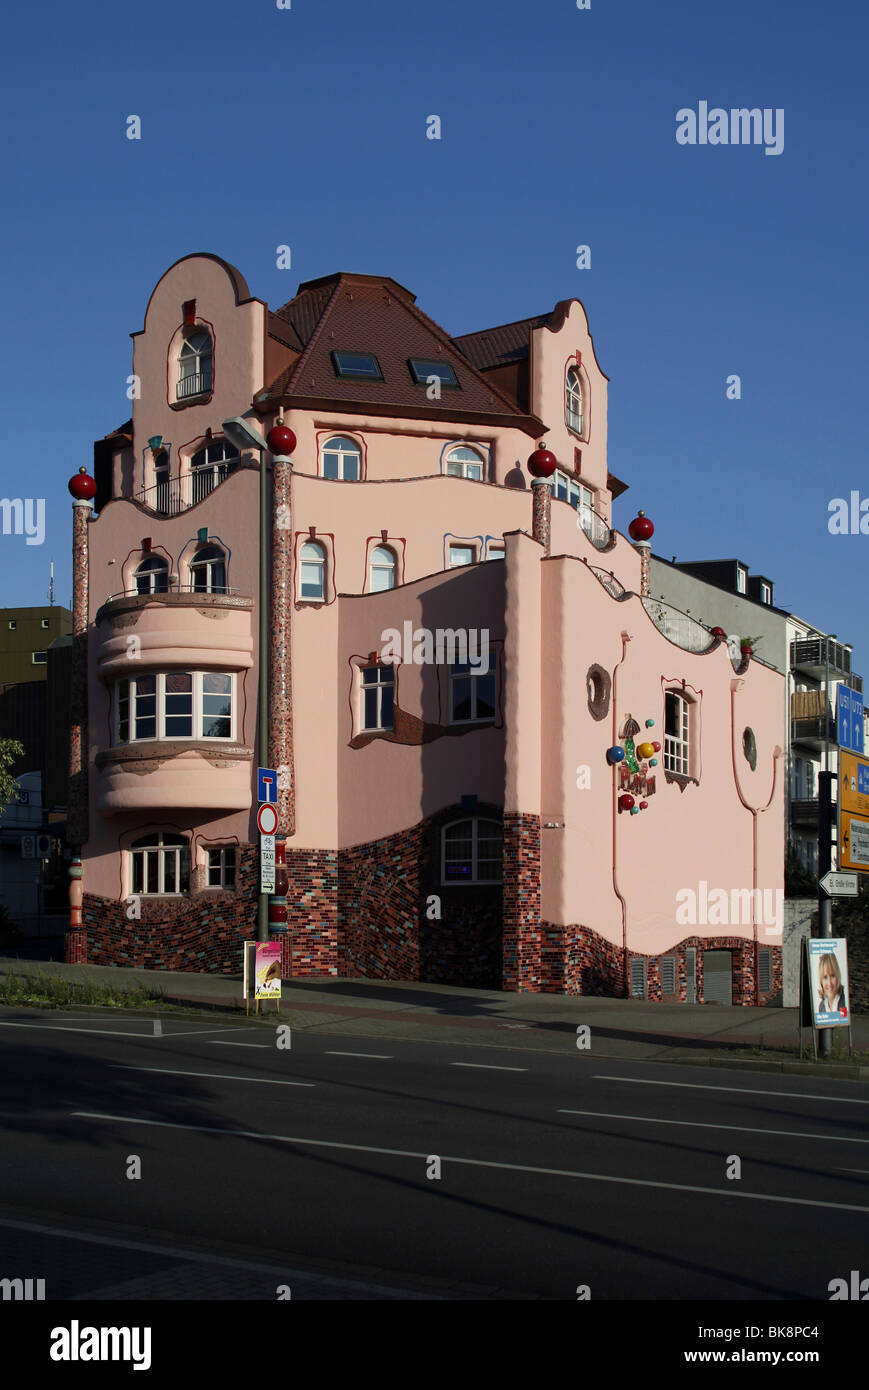 Immeuble commercial et de bureau dans le style Hundertwasser, Aplerbeck, Dortmund, Rhénanie du Nord-Westphalie, Allemagne, Europe Banque D'Images